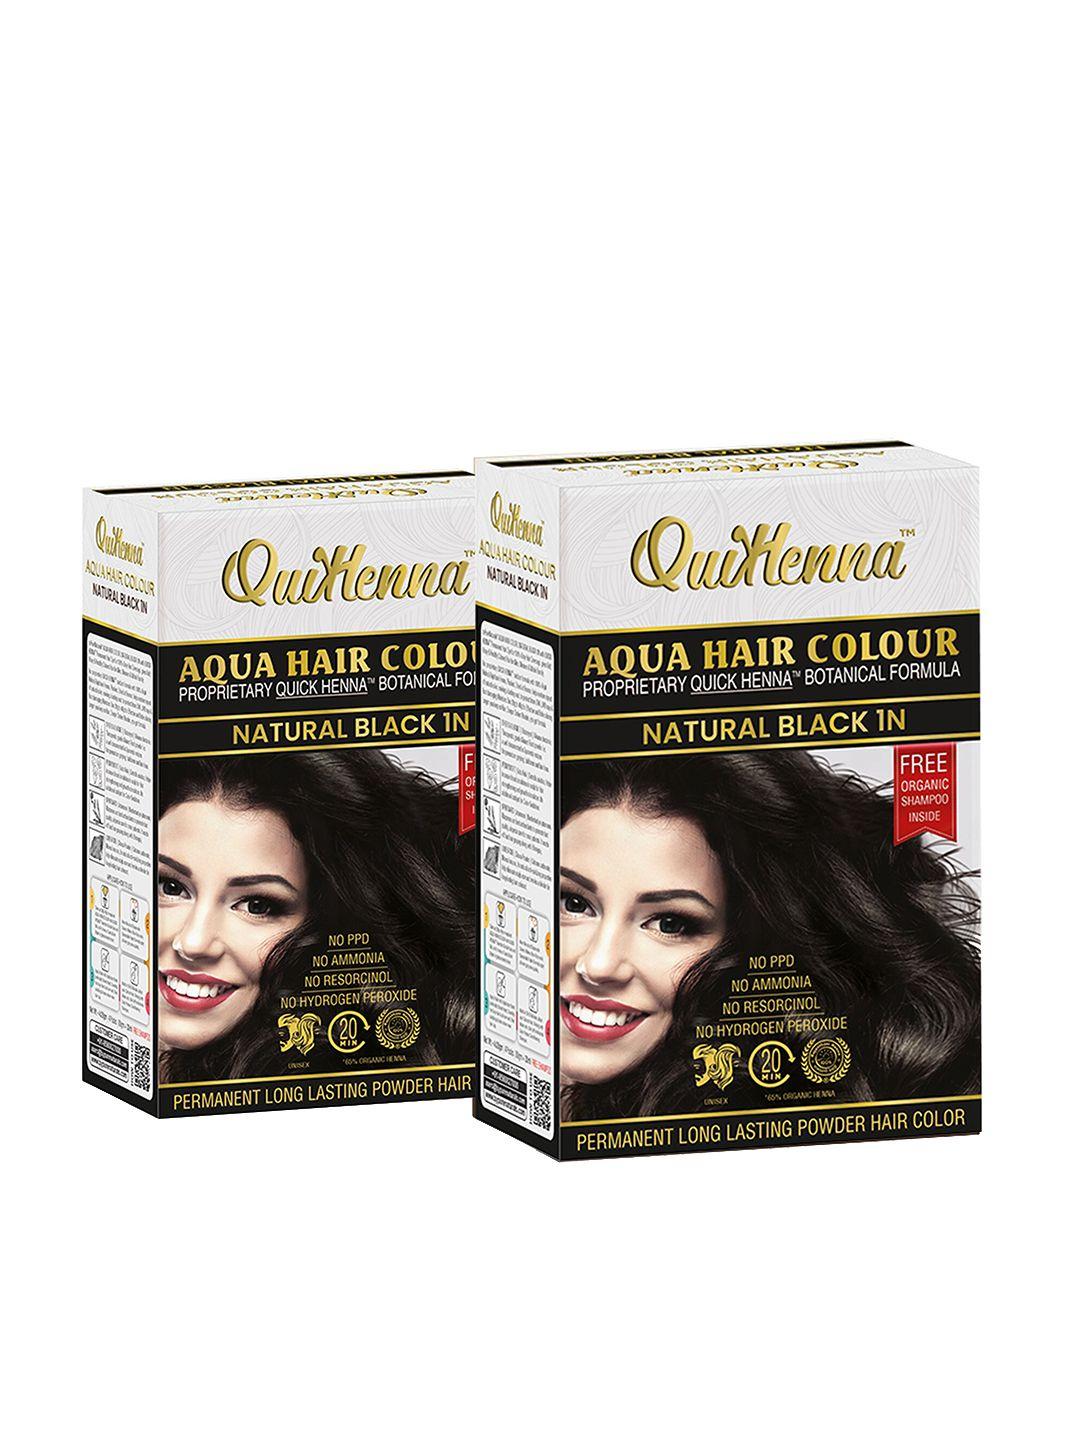 quikhenna set of 2 no ammonia aqua hair colour 110g each - natural black 1n